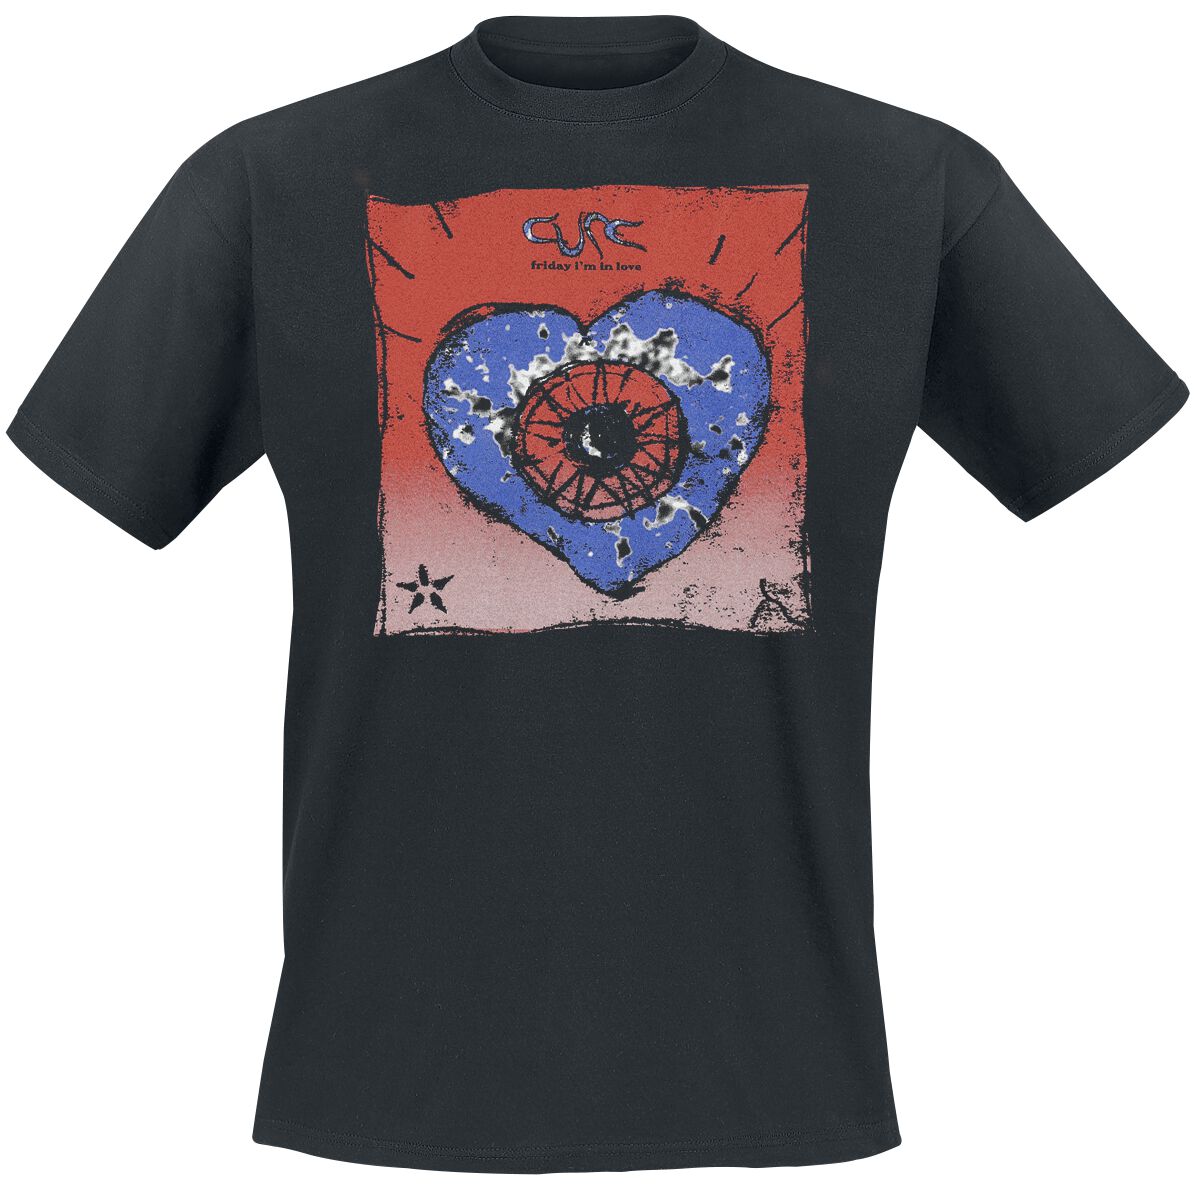 The Cure T-Shirt - Friday I`m In Love - S bis 4XL - für Männer - Größe 3XL - schwarz  - Lizenziertes Merchandise!